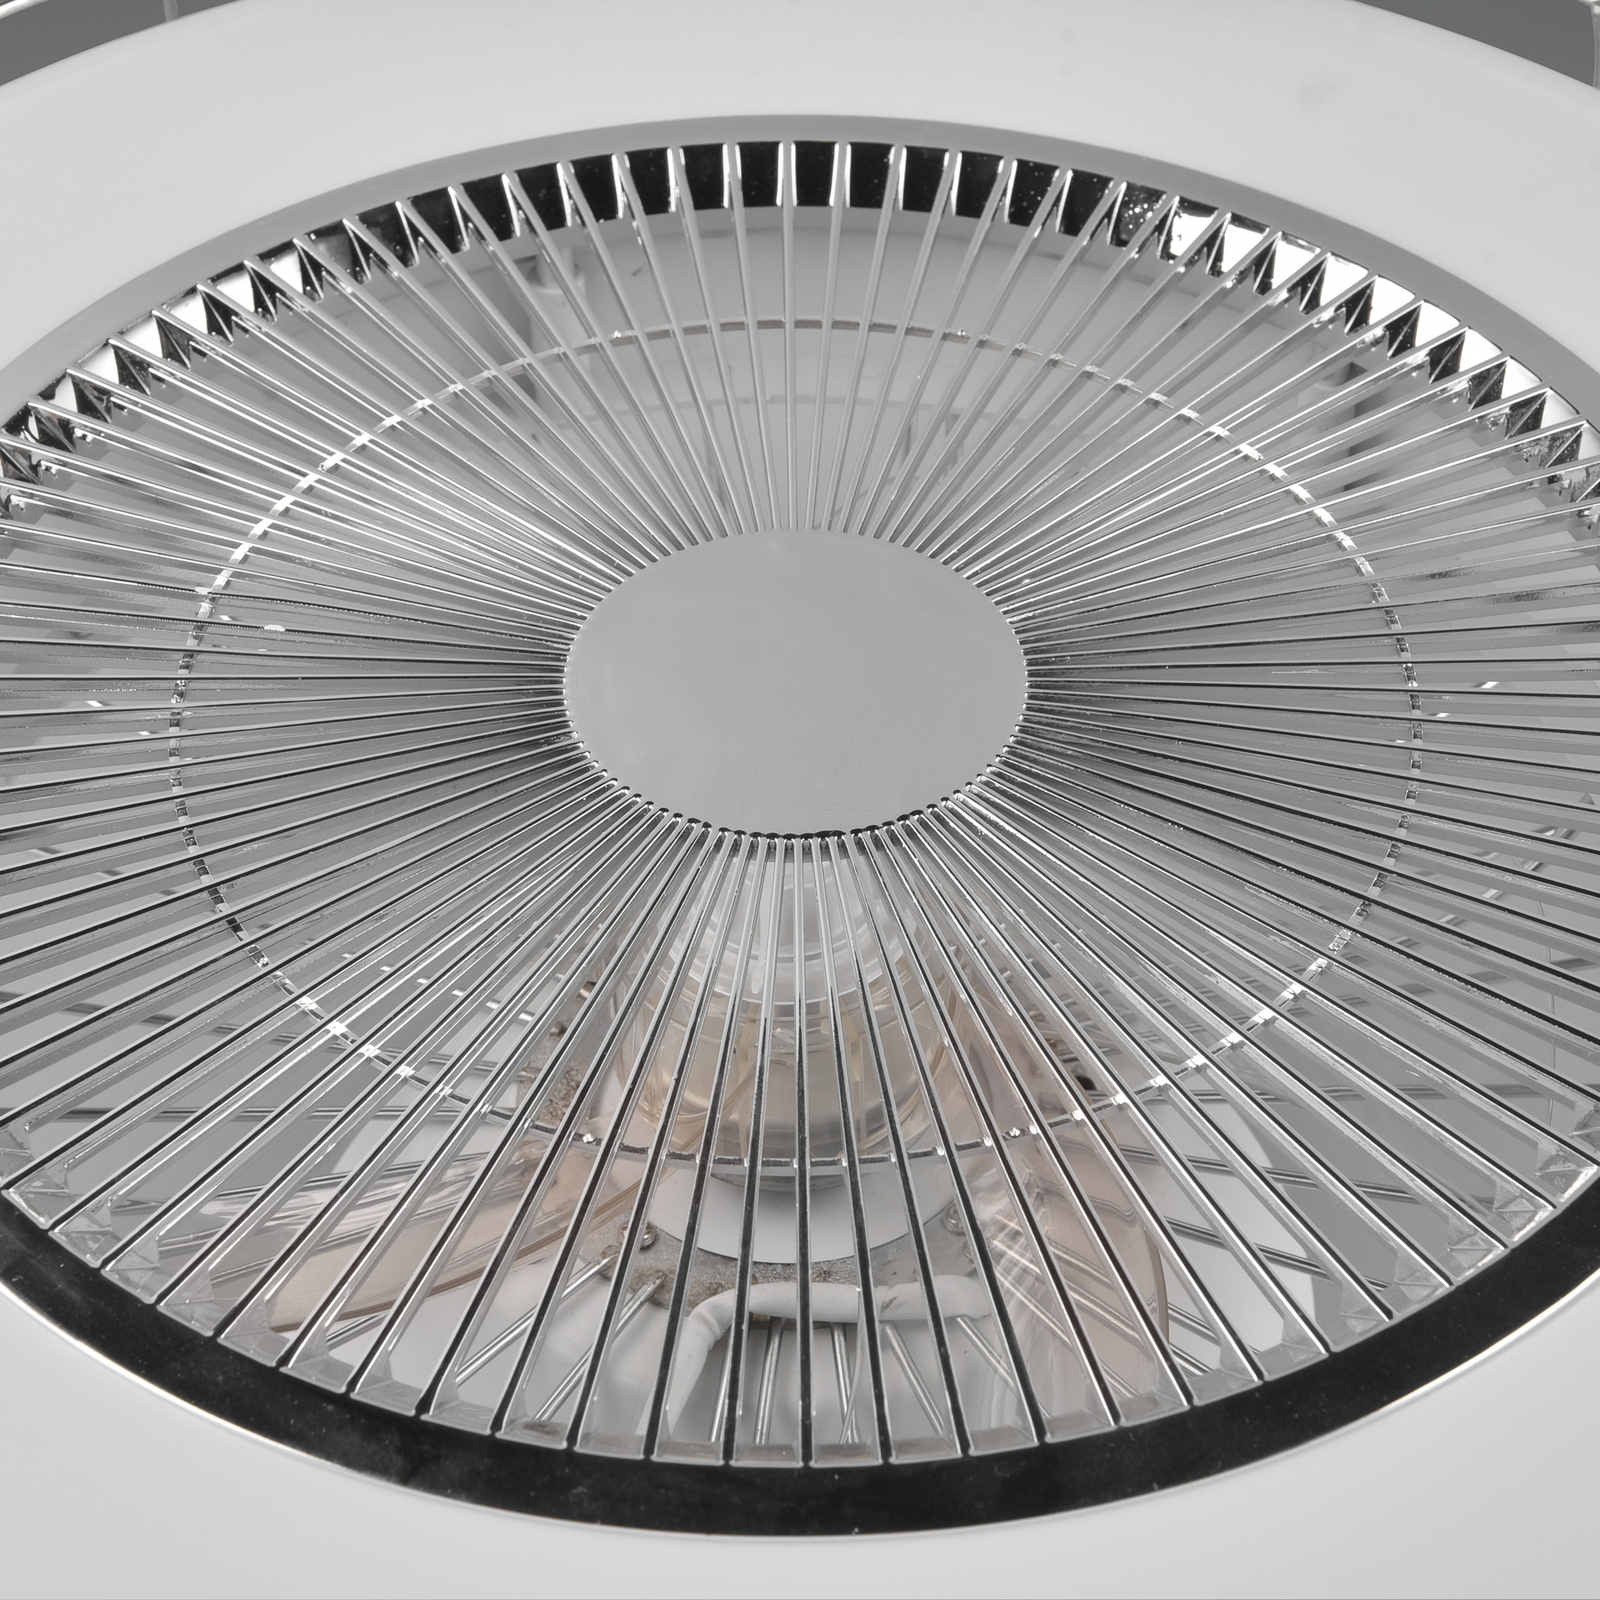 Smart LED stropni ventilator Sandfjord, tihi, krom, Ø 50 cm